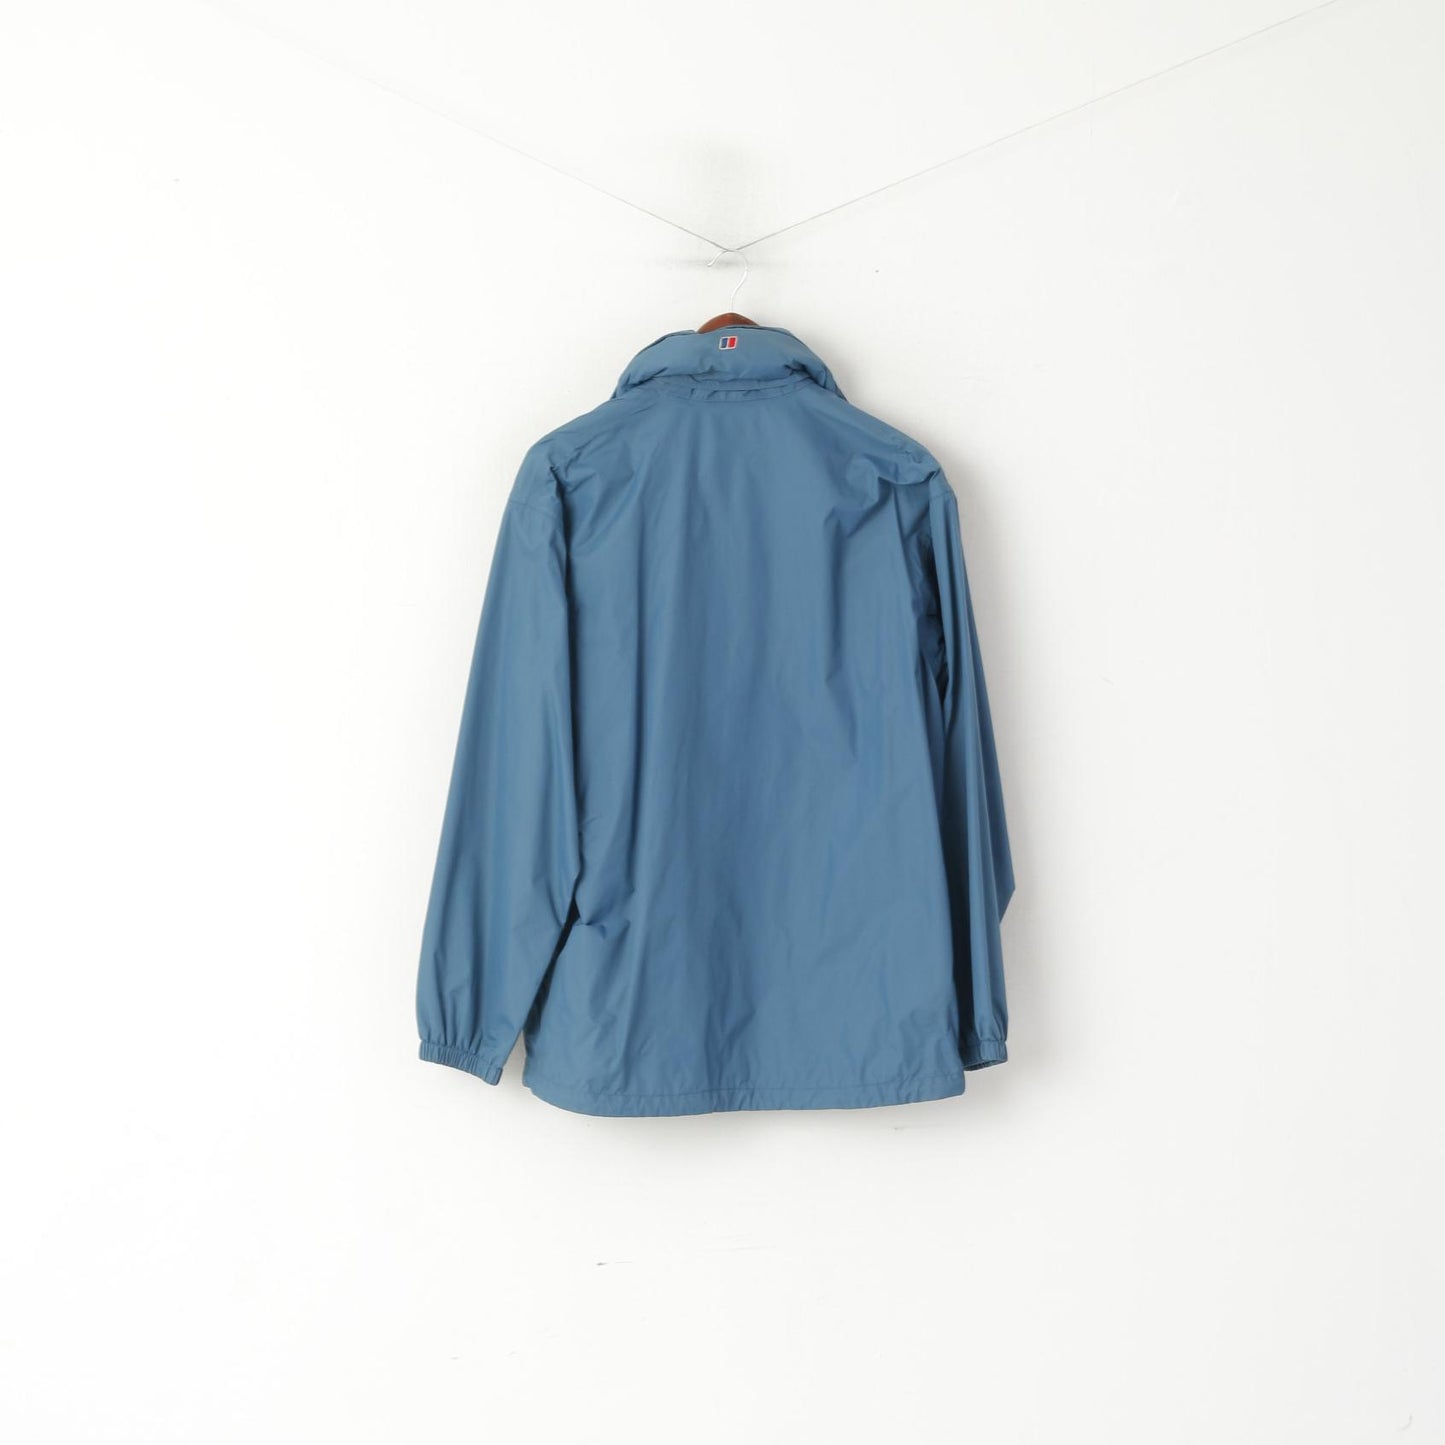 Berghaus Giacca da donna 14 L. Top esterno con cappuccio nascosto impermeabile in nylon blu sporco